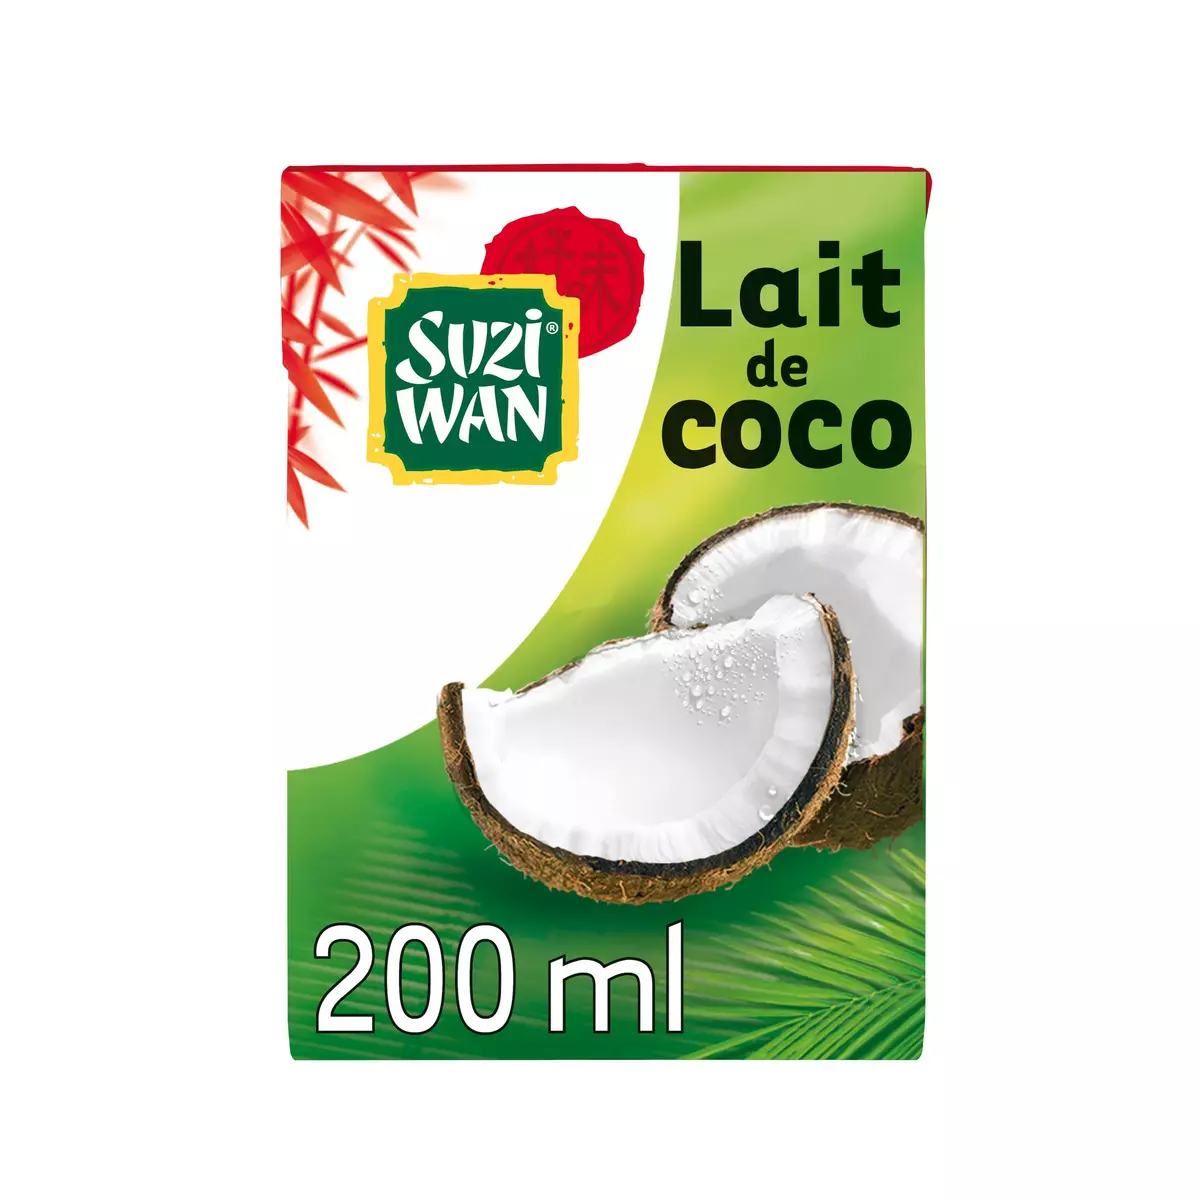 SUZI WAN Lait de coco brique 200ml